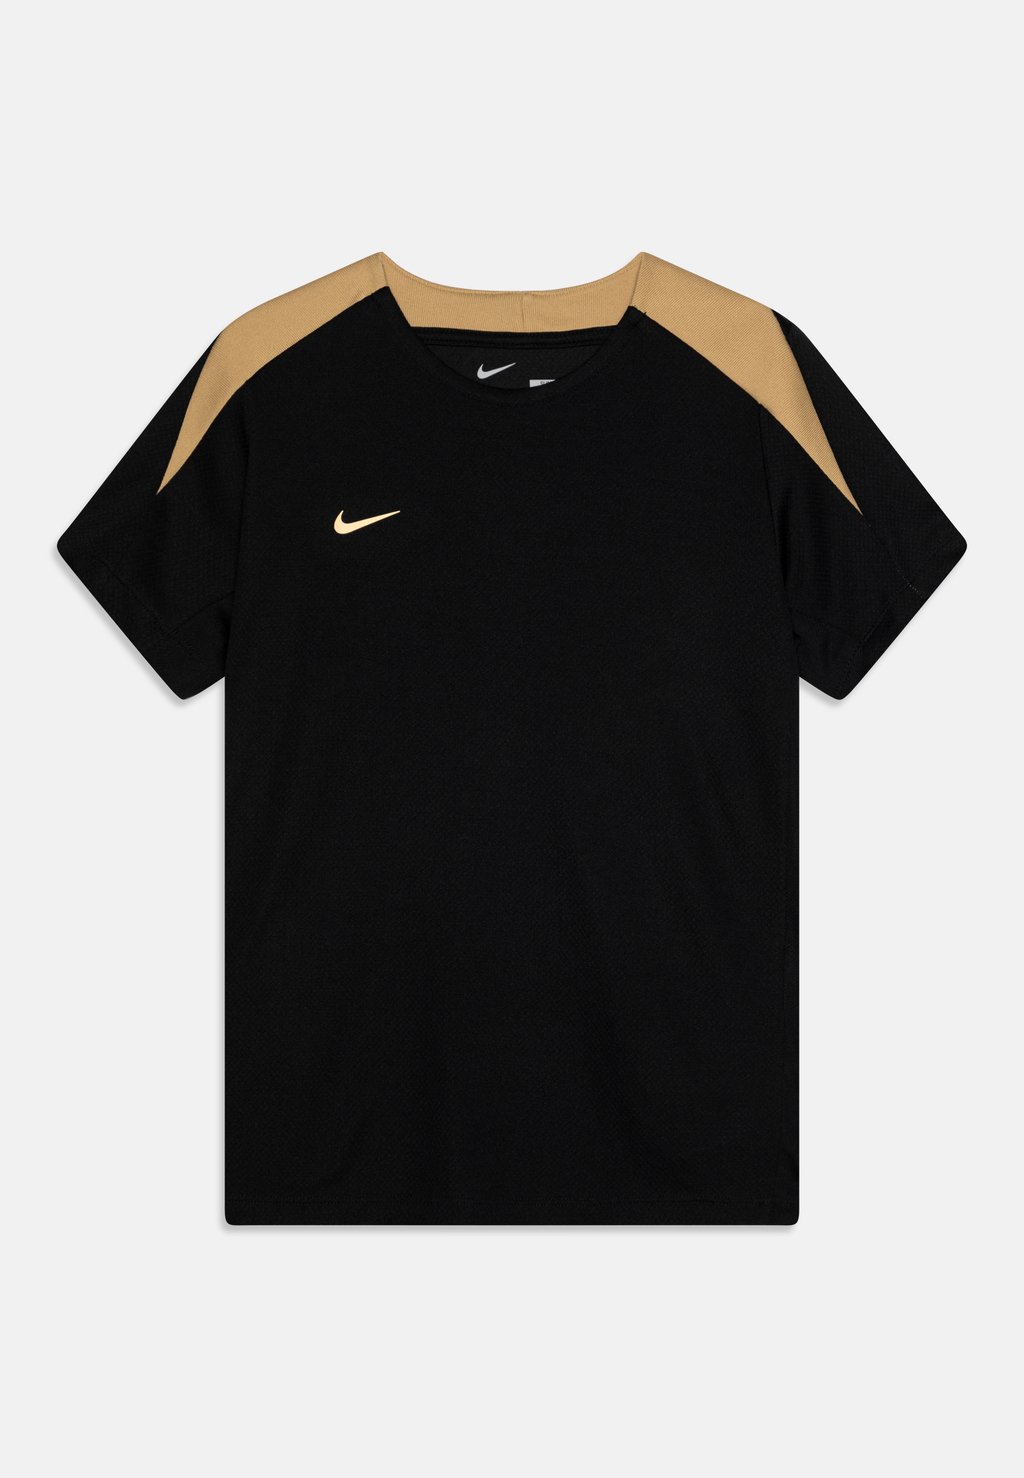 Спортивная футболка Strike Unisex Nike, цвет black/gold/metallic gold цена и фото